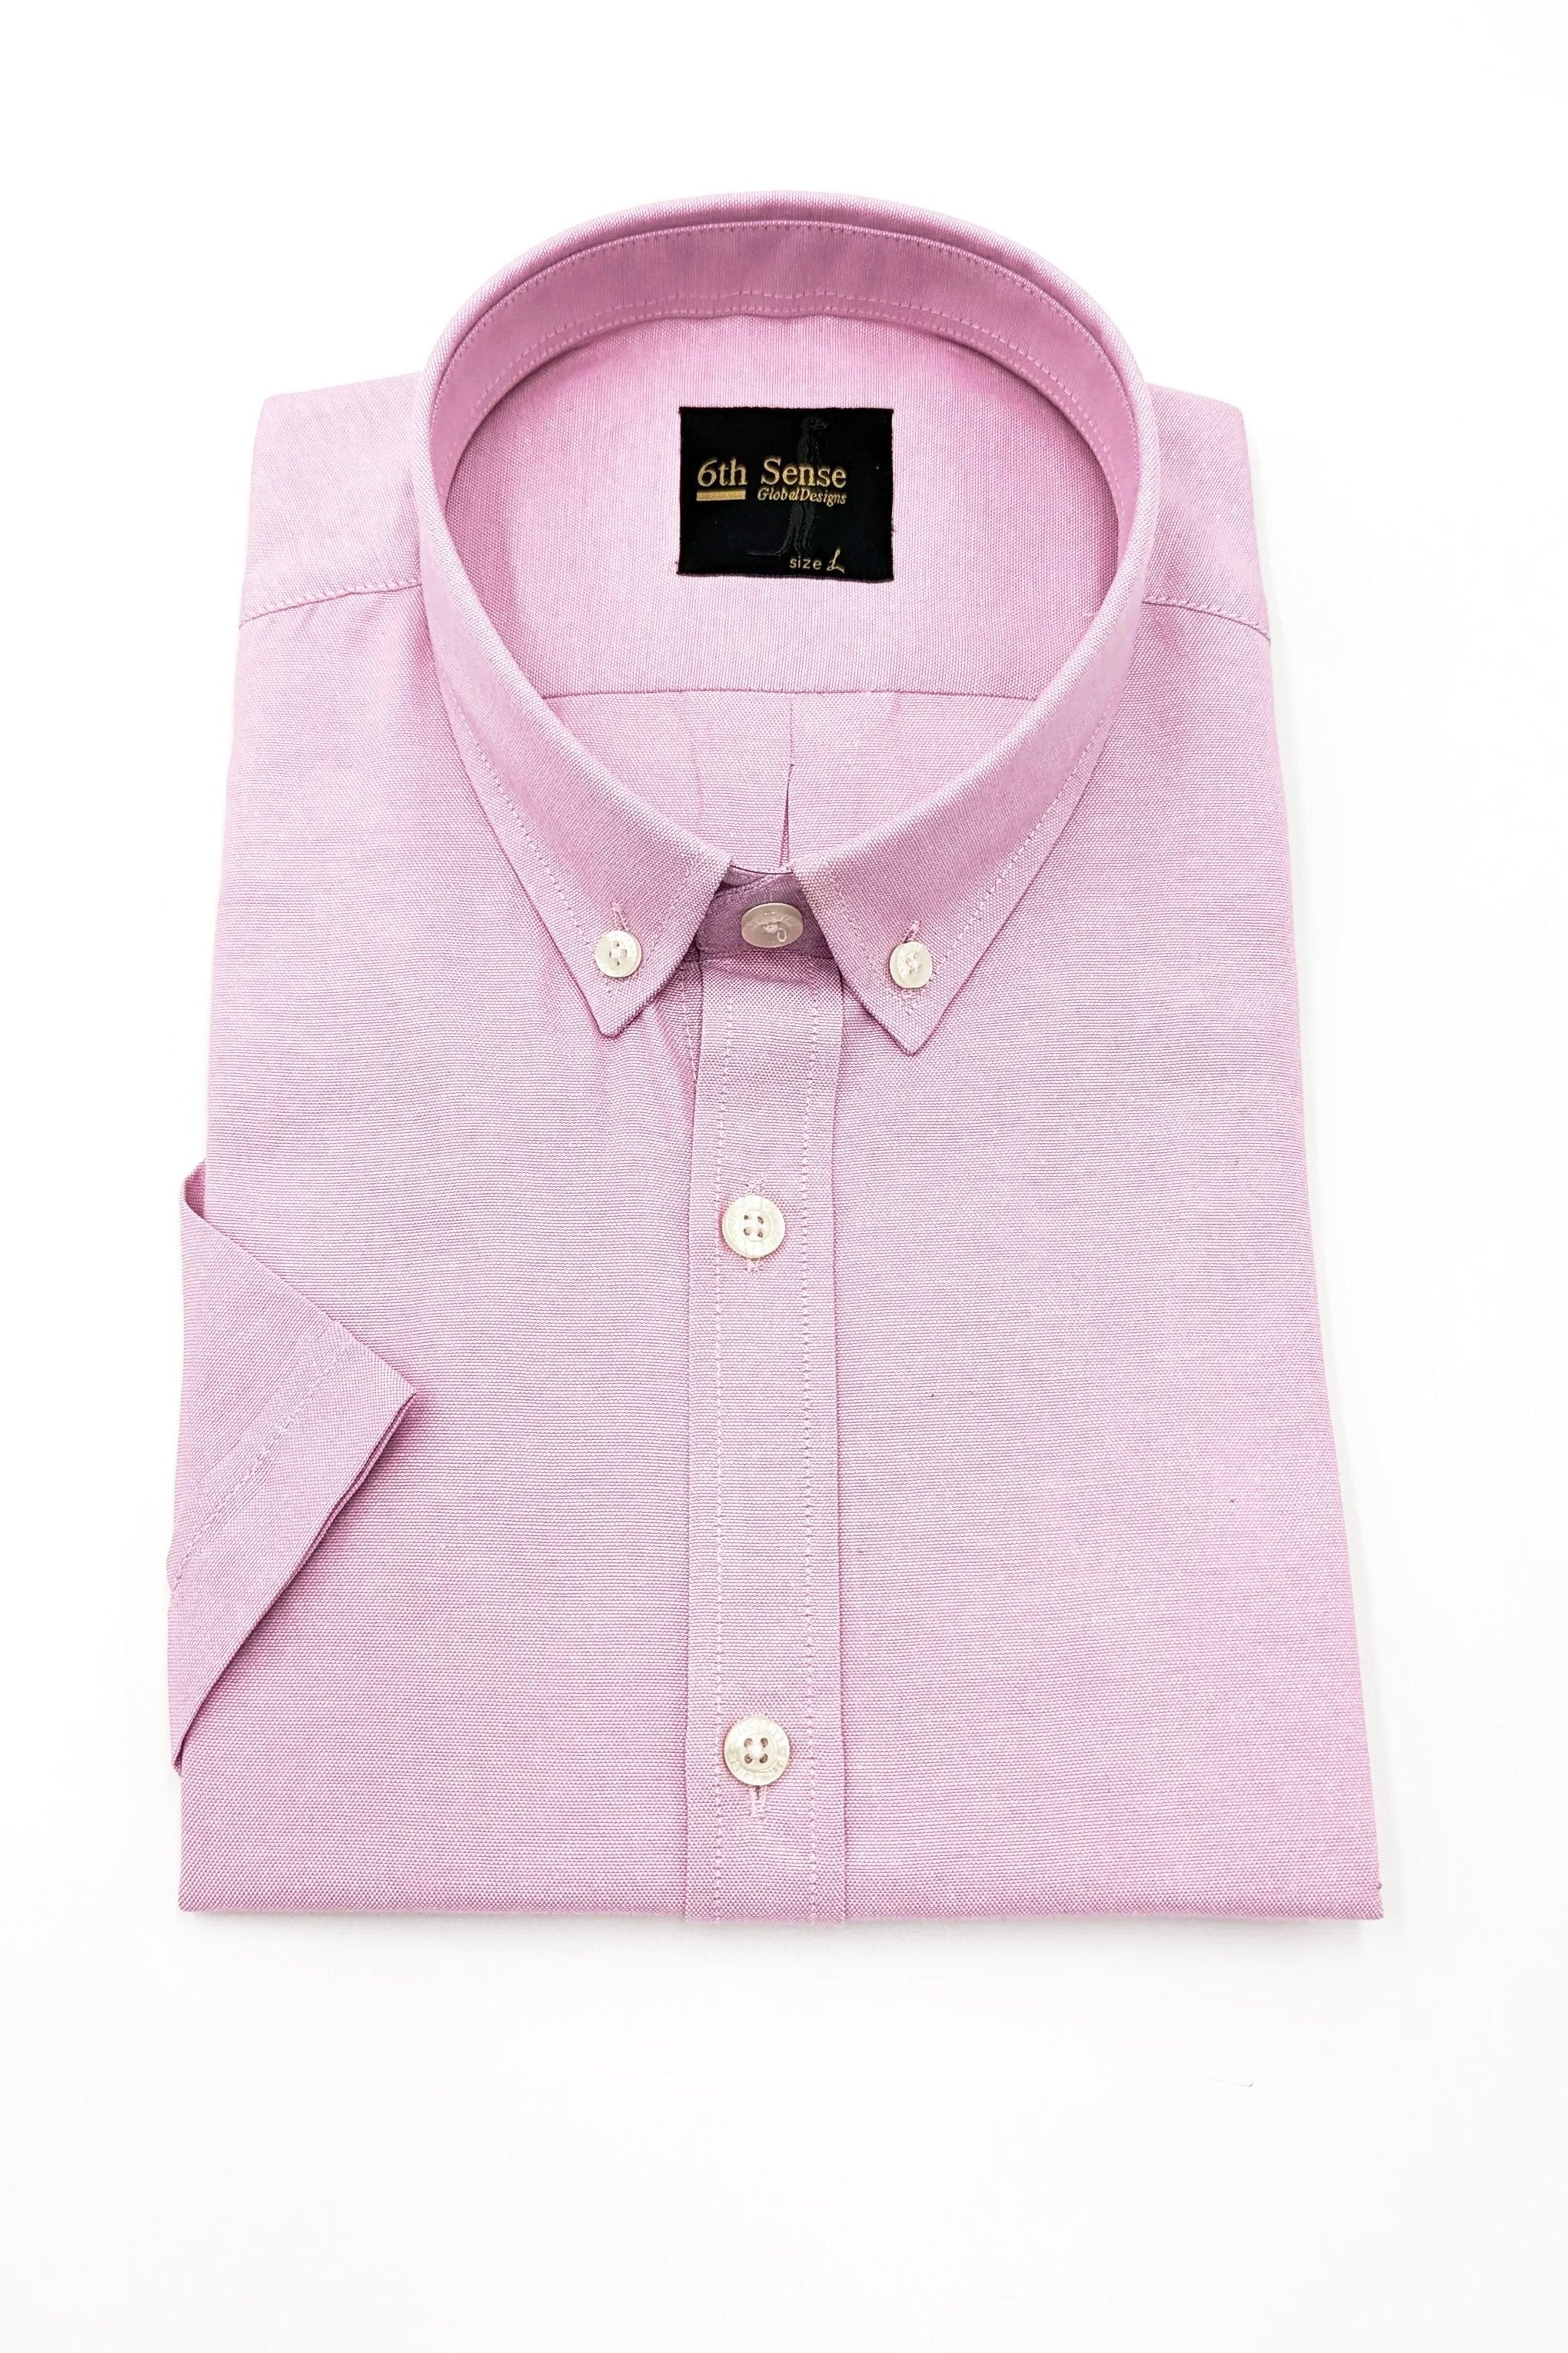 6th Sense Short Sleeve Pink Plain Shirt